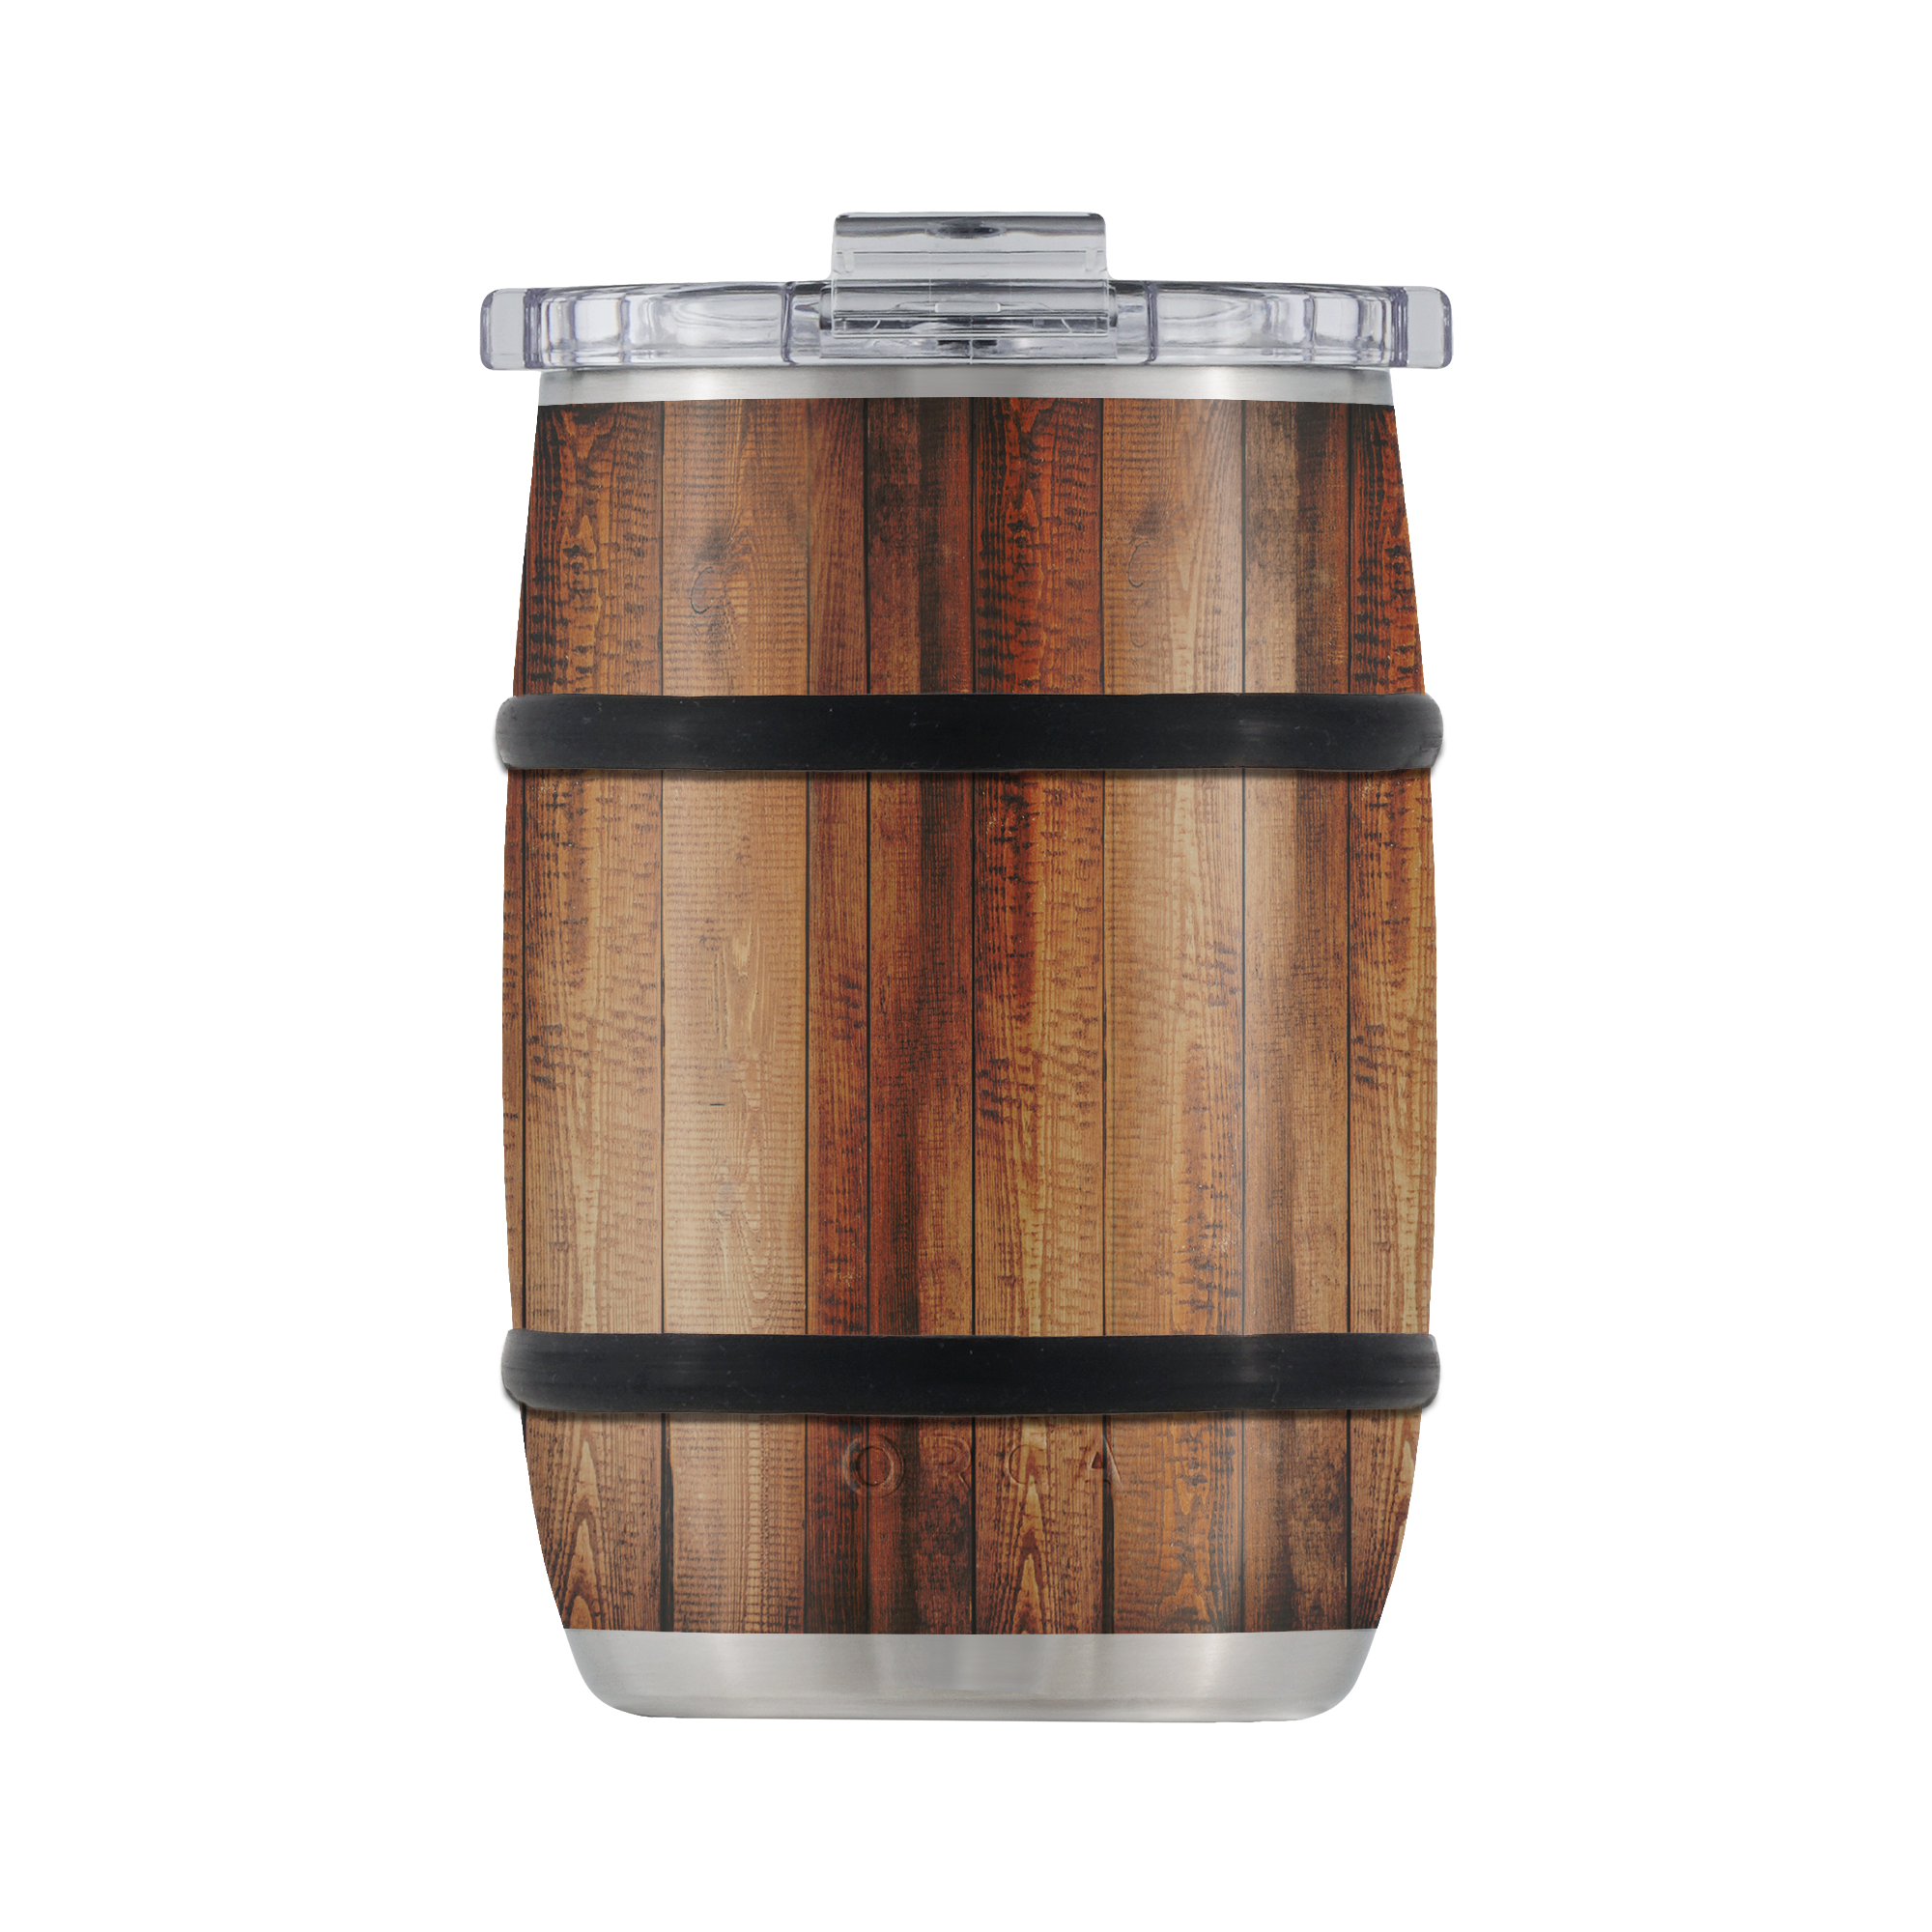 Whiskey Barrel by Orca 24 OZ